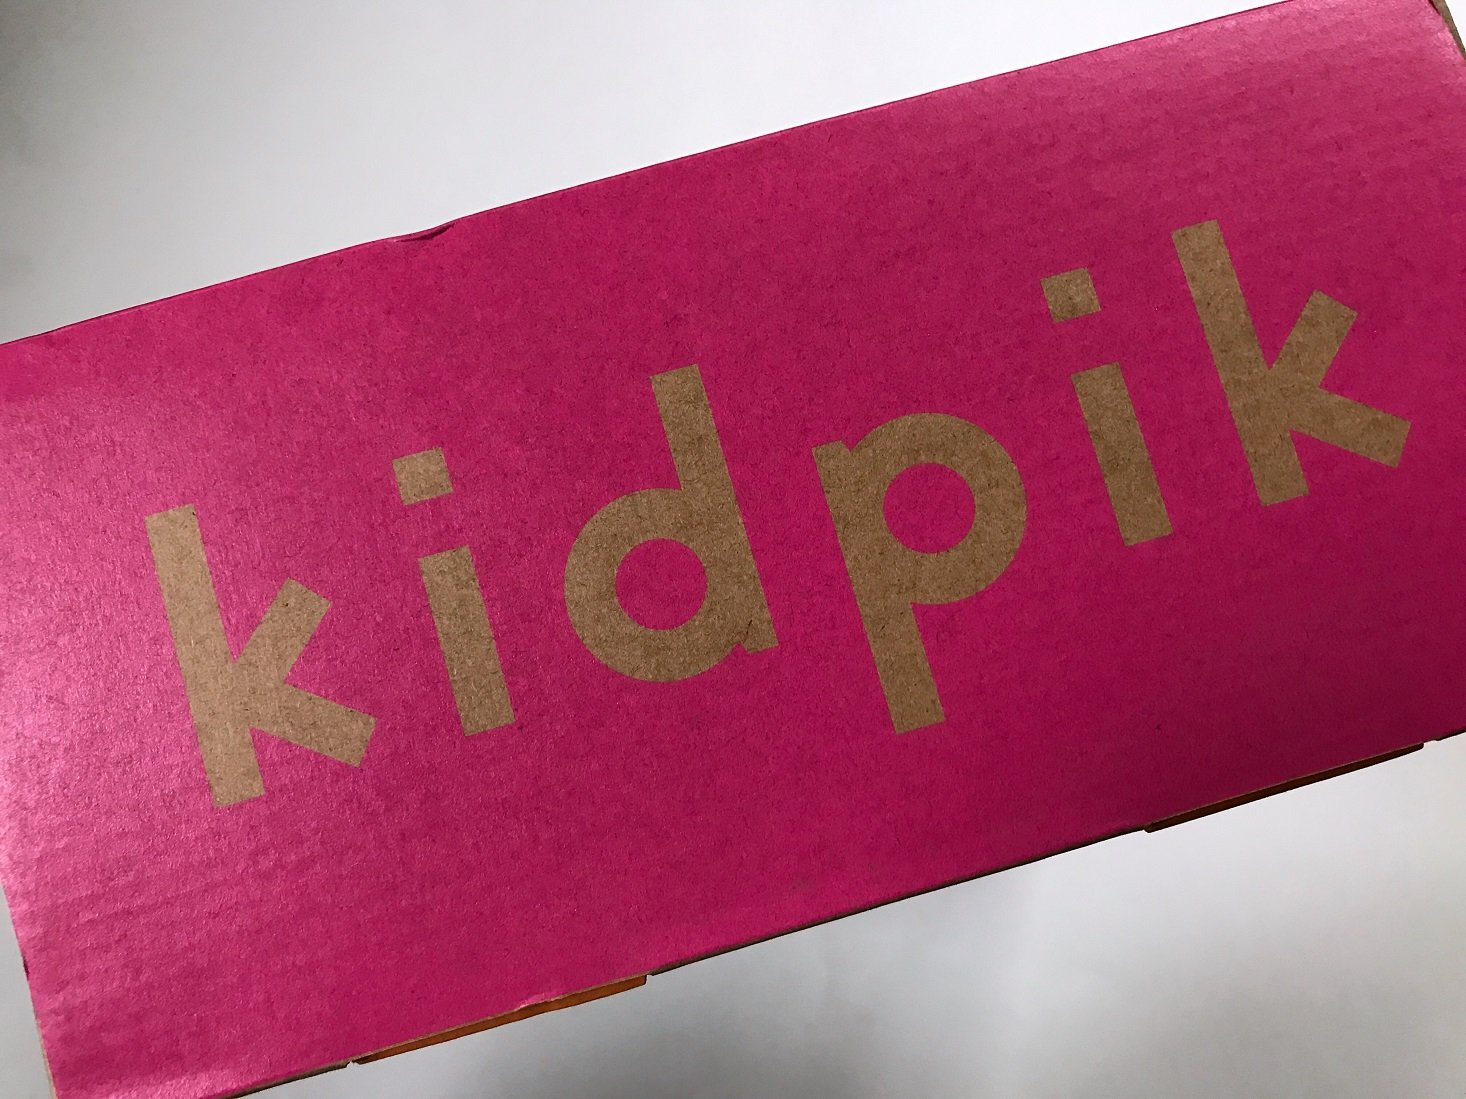 kidpik Girly Two Holiday Gift Box Review – November 2017